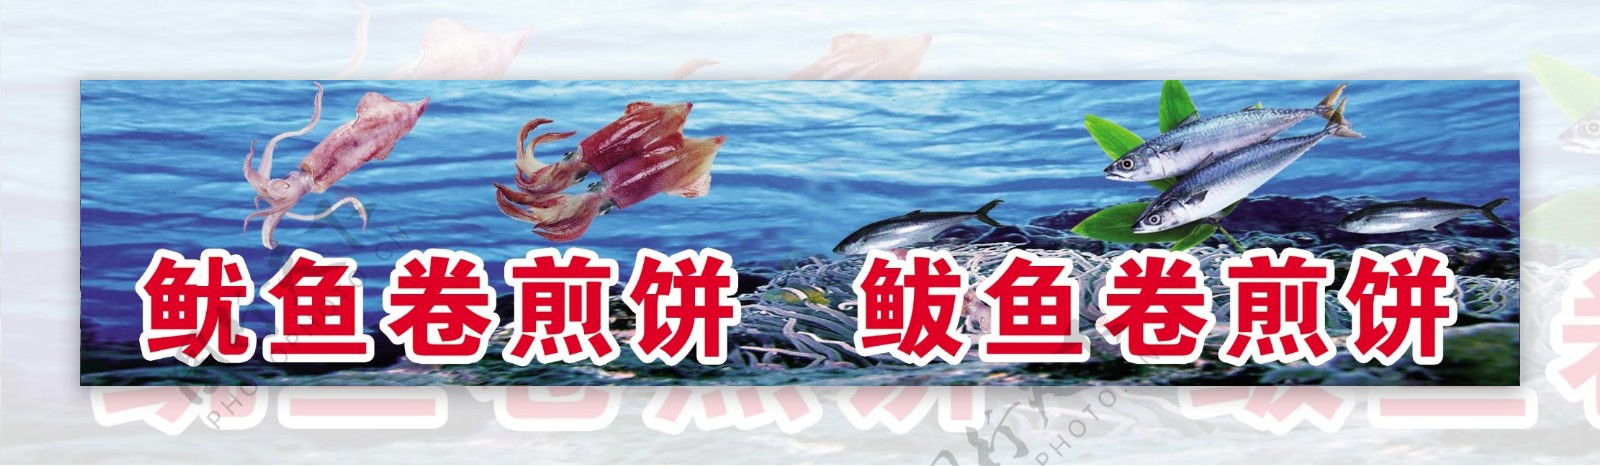 鱿鱼鲅鱼卷煎饼海报图片